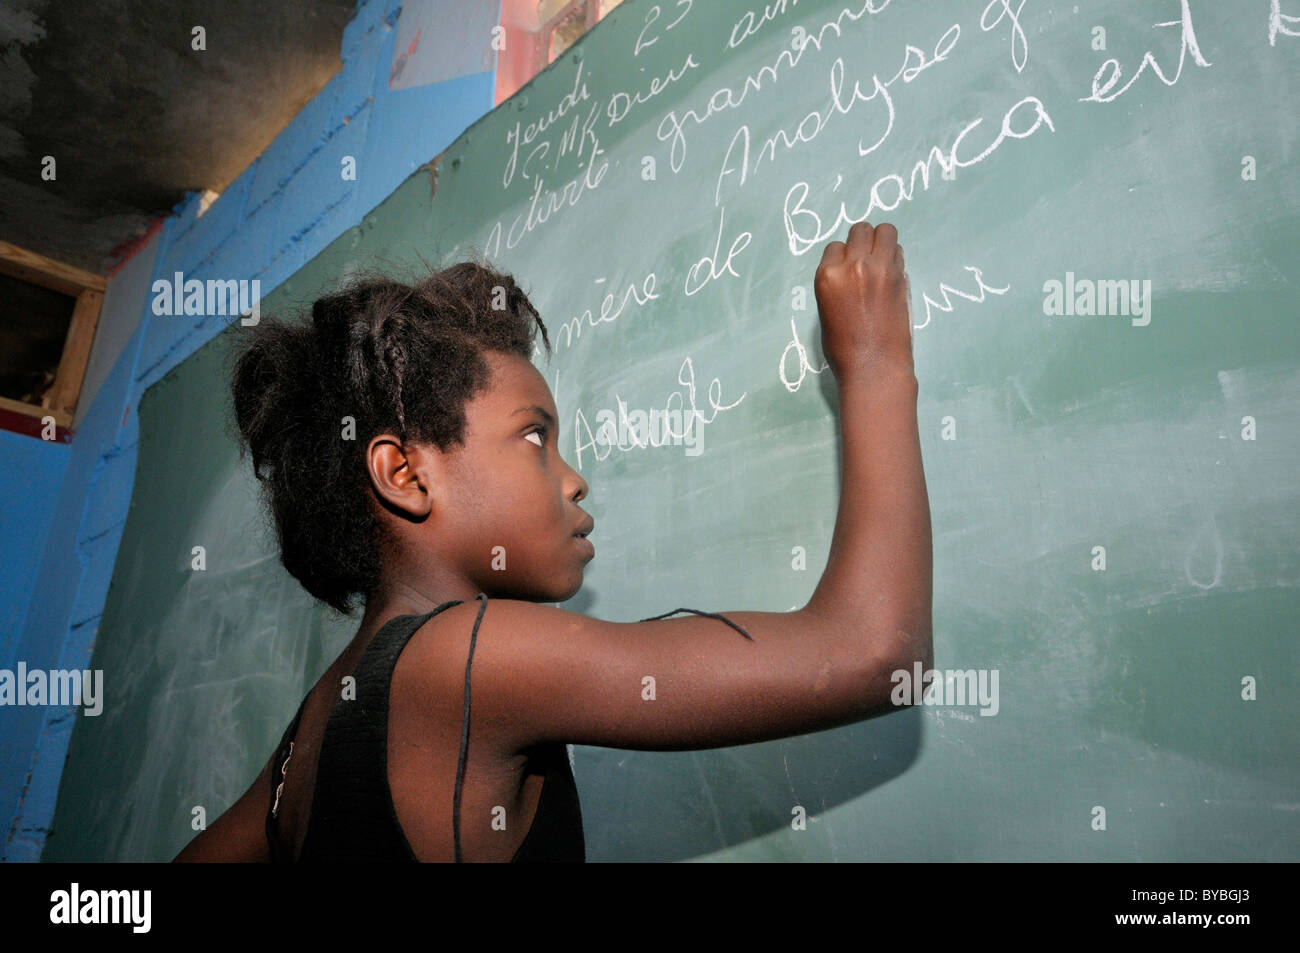 El estudiante trabaja en la junta, distrito Bizozon, Port-au-Prince, Haití, el Caribe, América Central Foto de stock